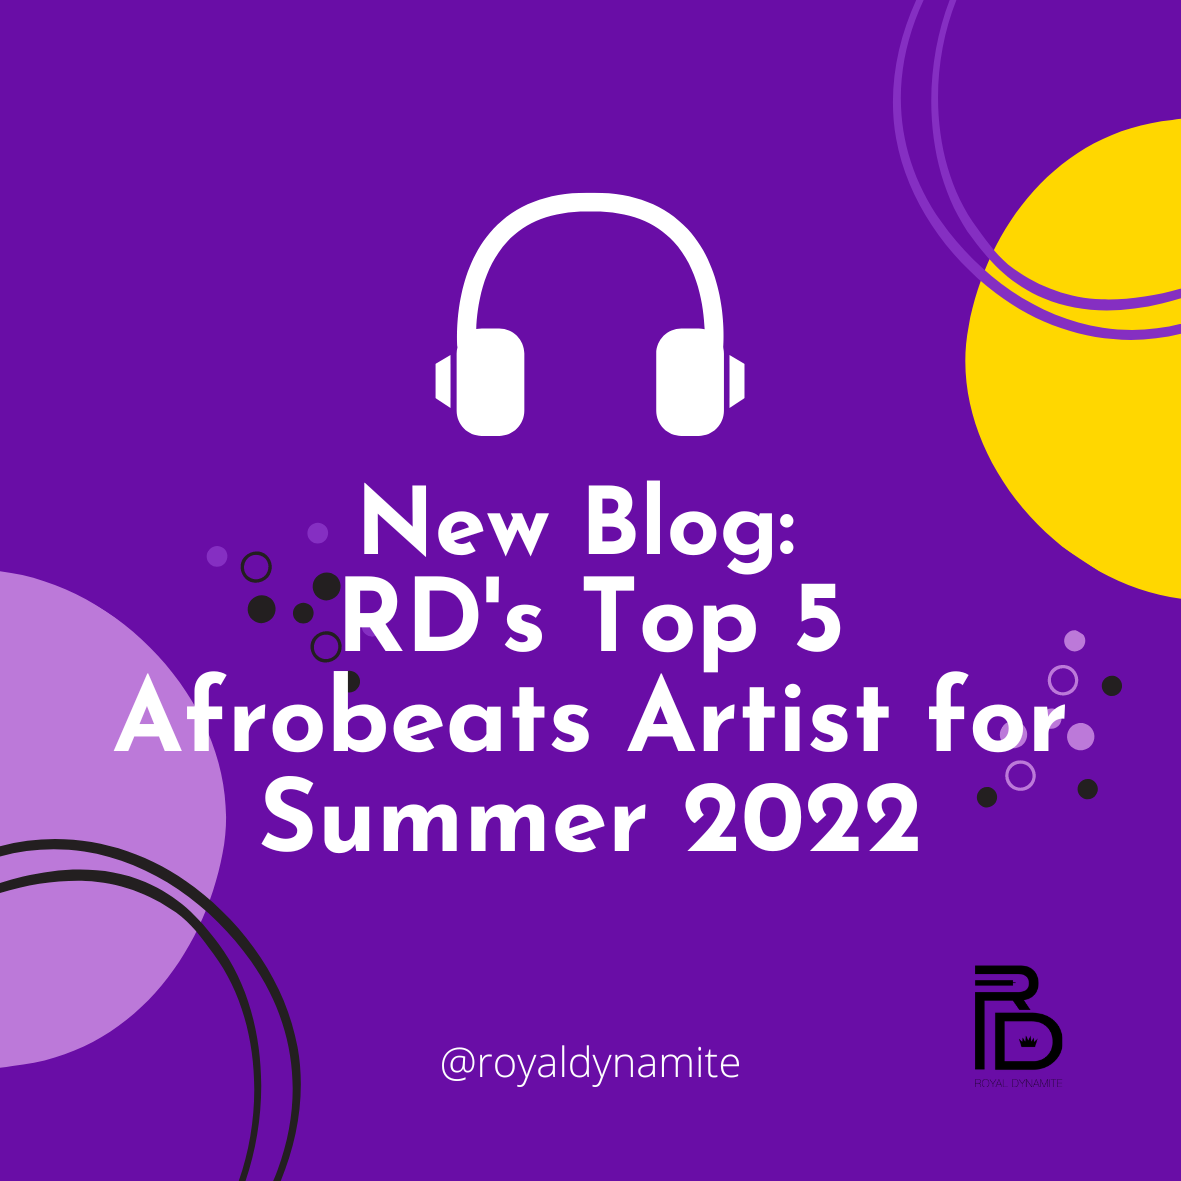 RD's Top 5 Afrobeats Artists for Summer 2022